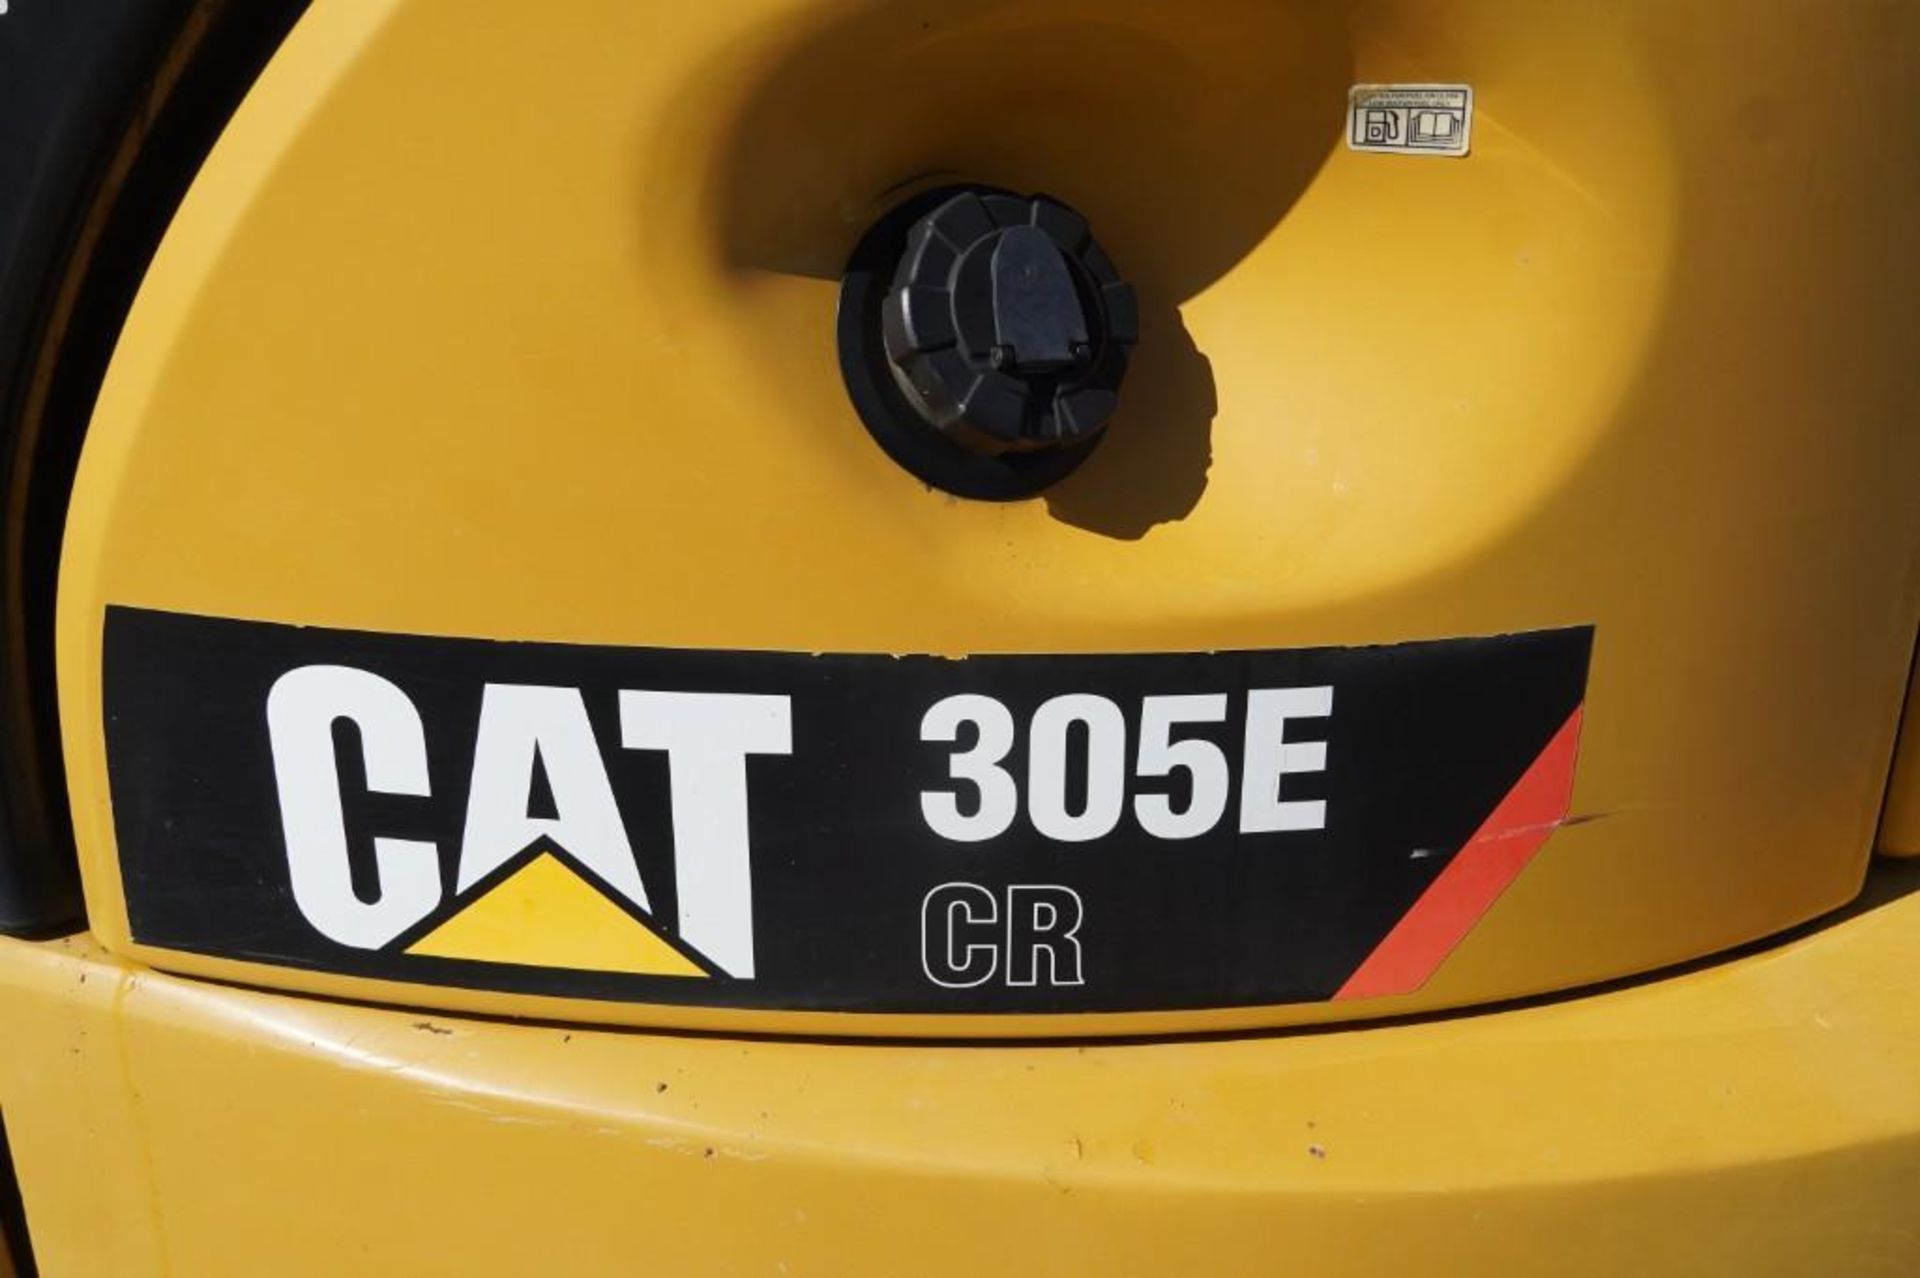 2012 Caterpillar 305E Excavator - Image 18 of 56